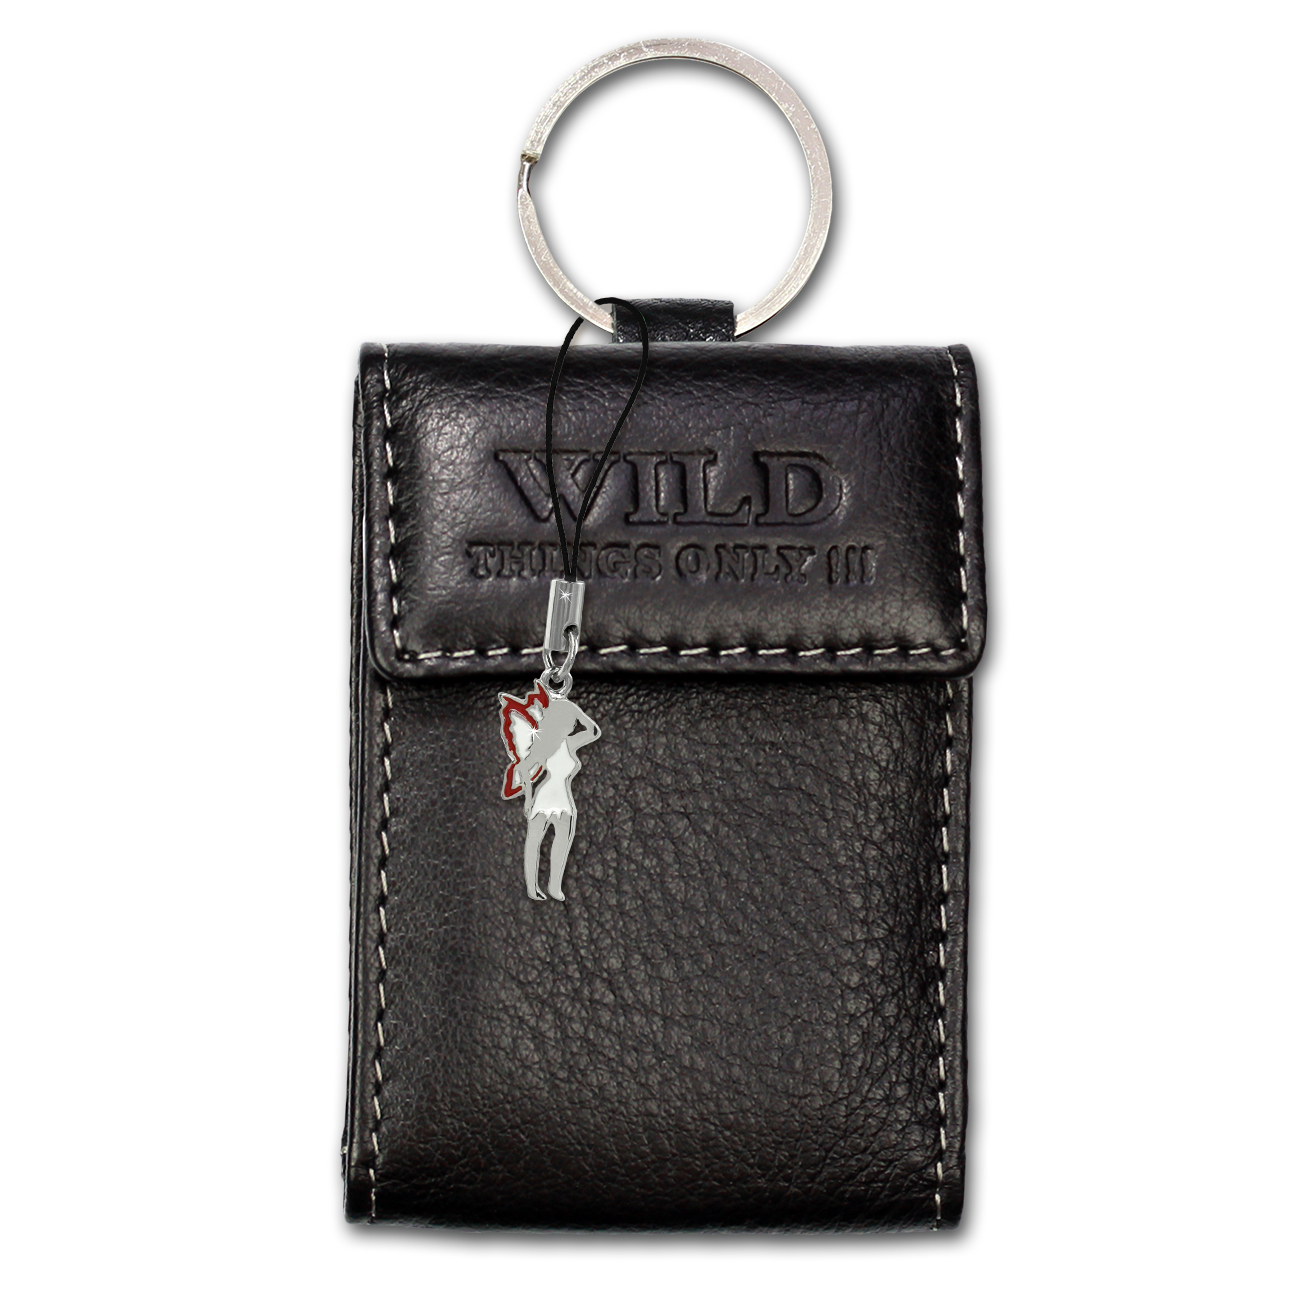 Bild von Etui, Geldbörse Leder schwarz Minibörse Schlüsseltasche Wild Things Only OPJ904S